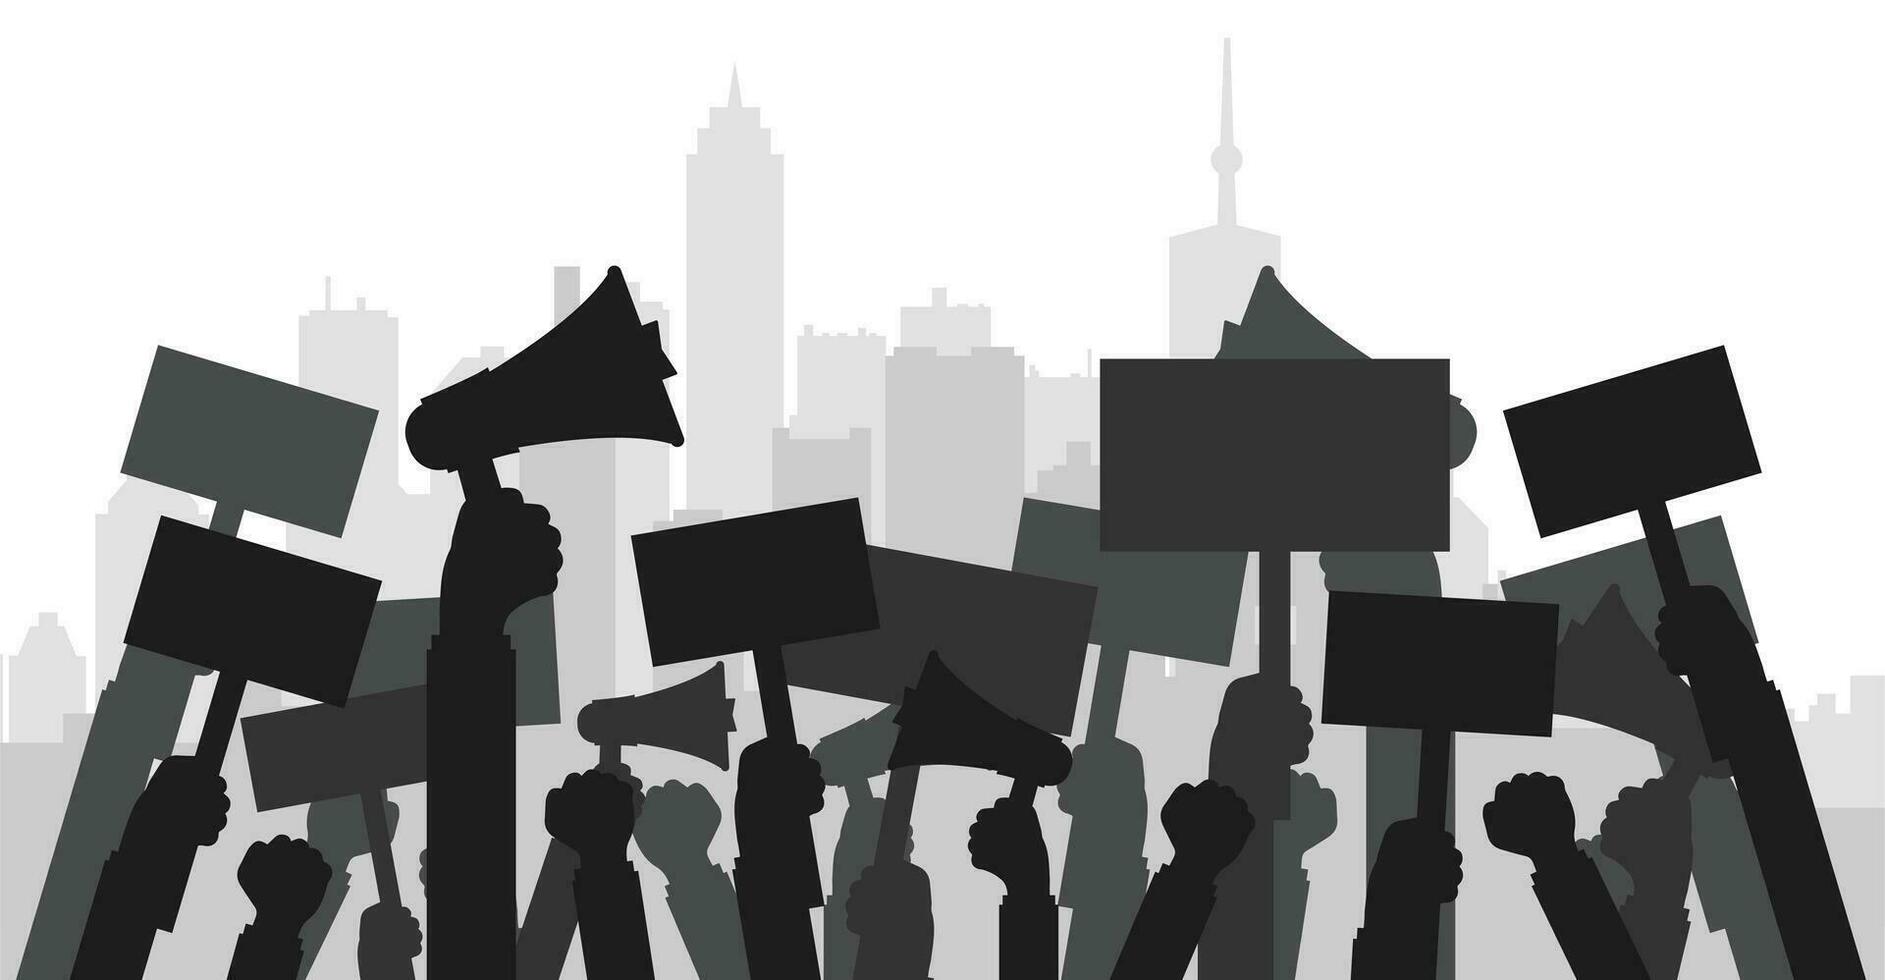 concept voor protest, revolutie of conflict. silhouet menigte van mensen demonstranten. vlak vector illustratie.